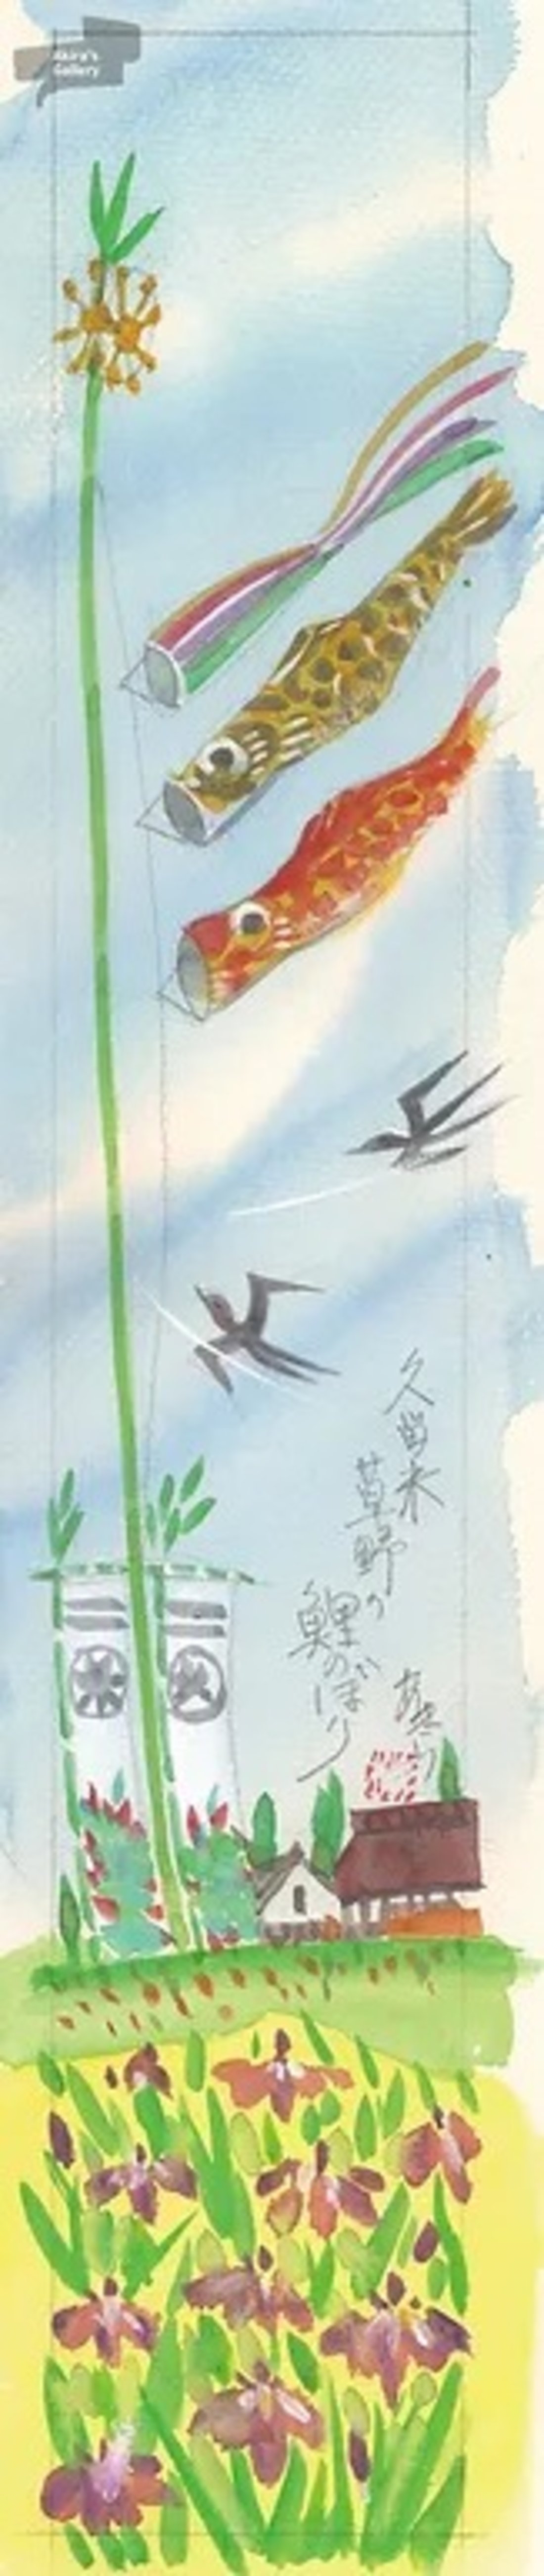 16 久留米草野の鯉のぼり